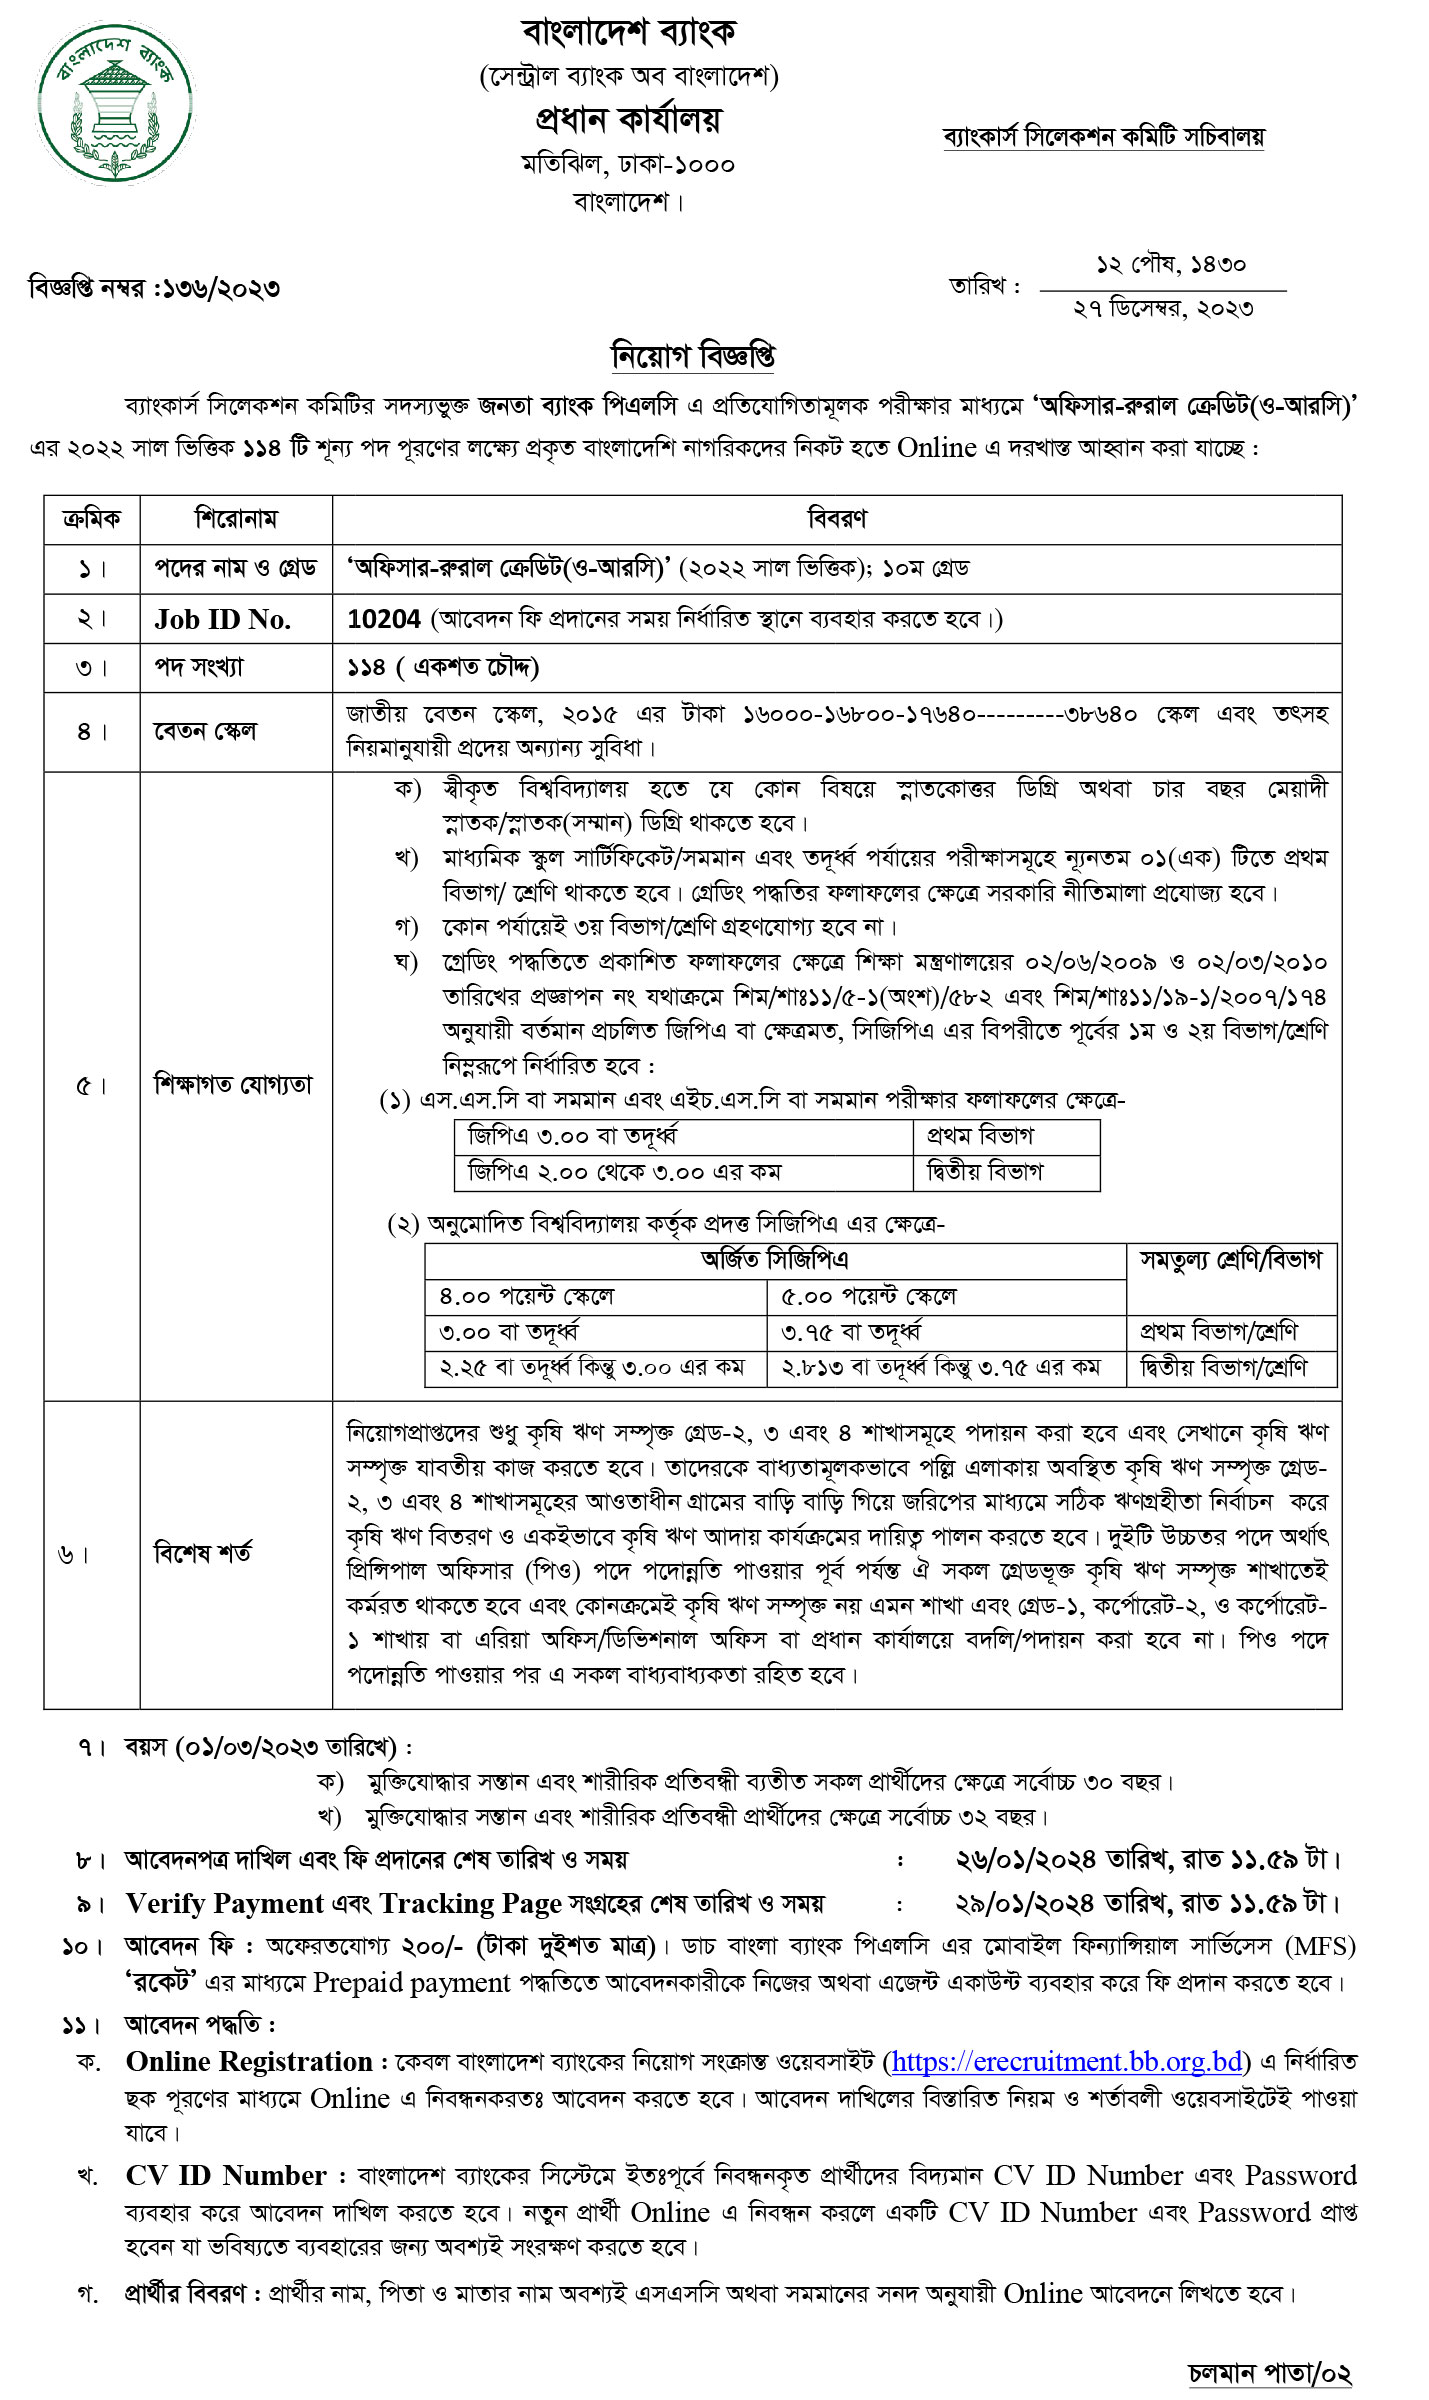 Official Image of Bangladesh Bank Job Circular 2024. https://infohouse24.com/bangladesh-bank-job-circular-2024/